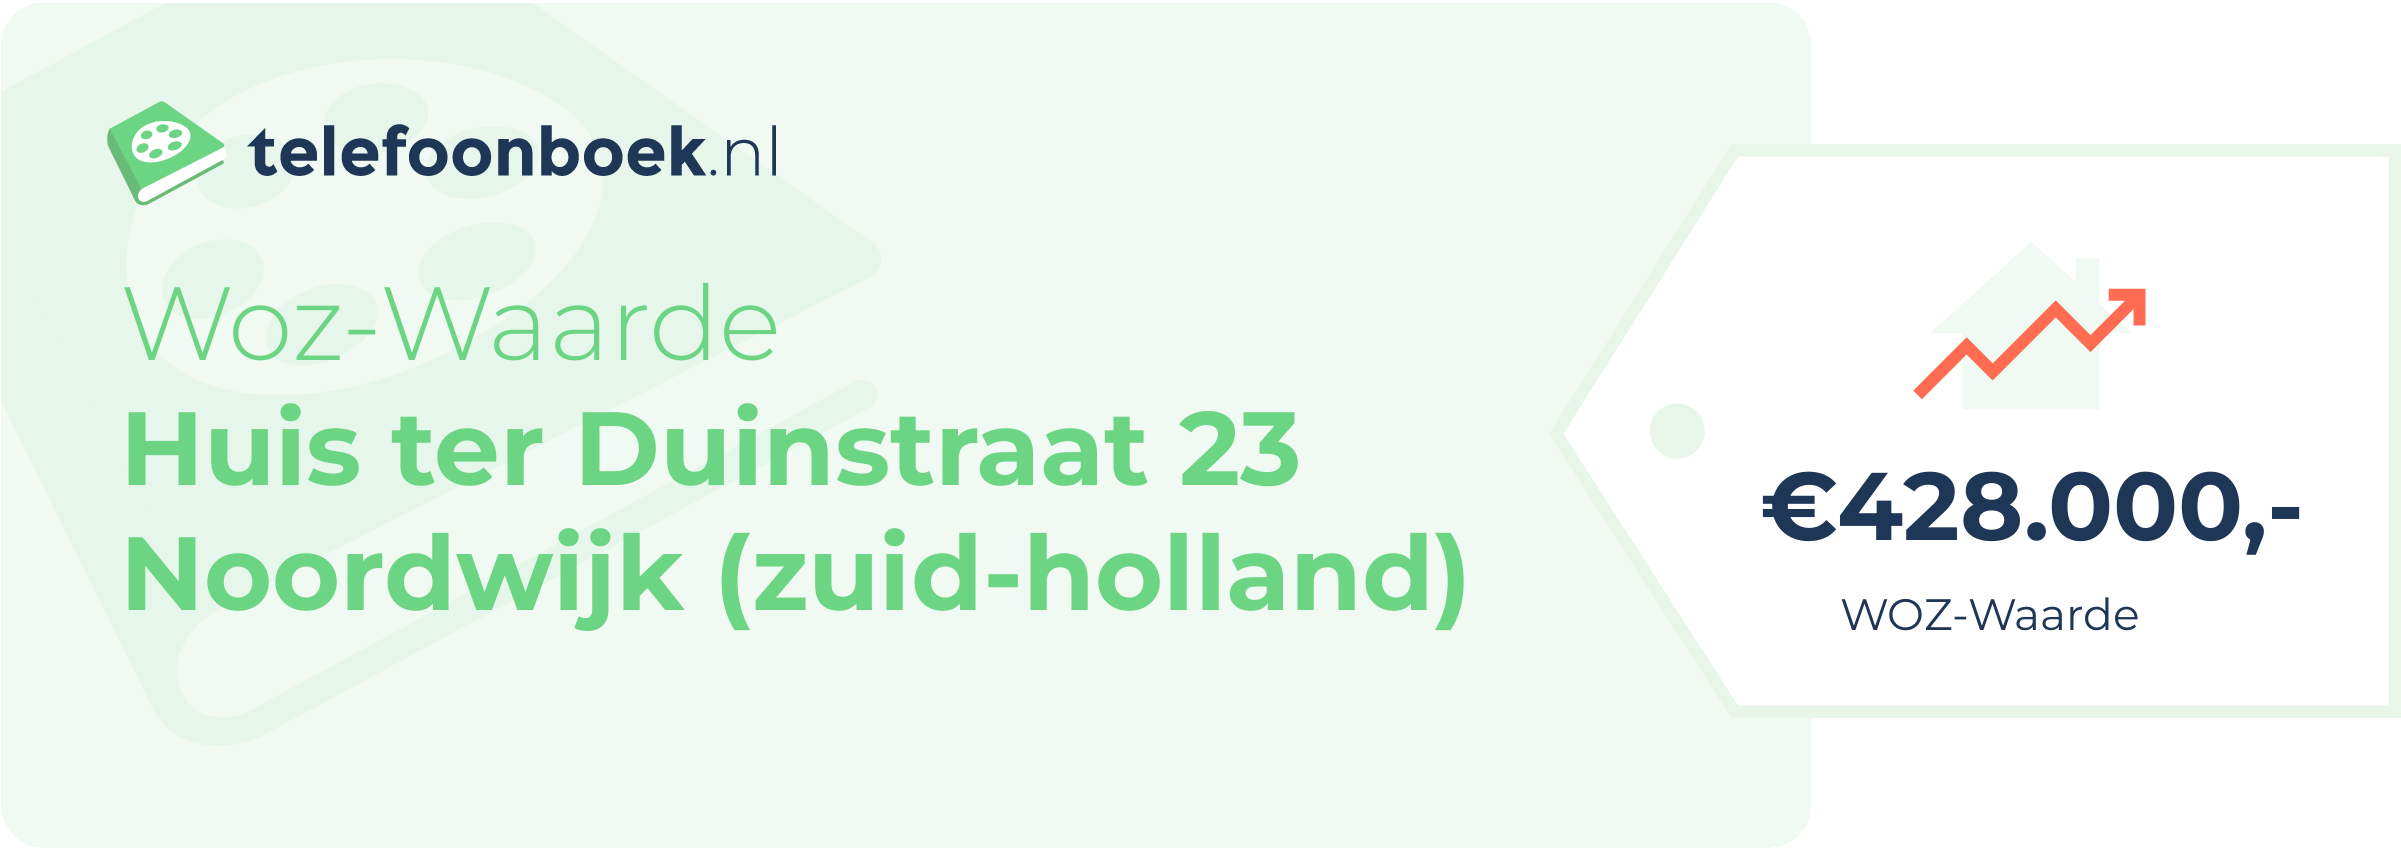 WOZ-waarde Huis Ter Duinstraat 23 Noordwijk (Zuid-Holland)